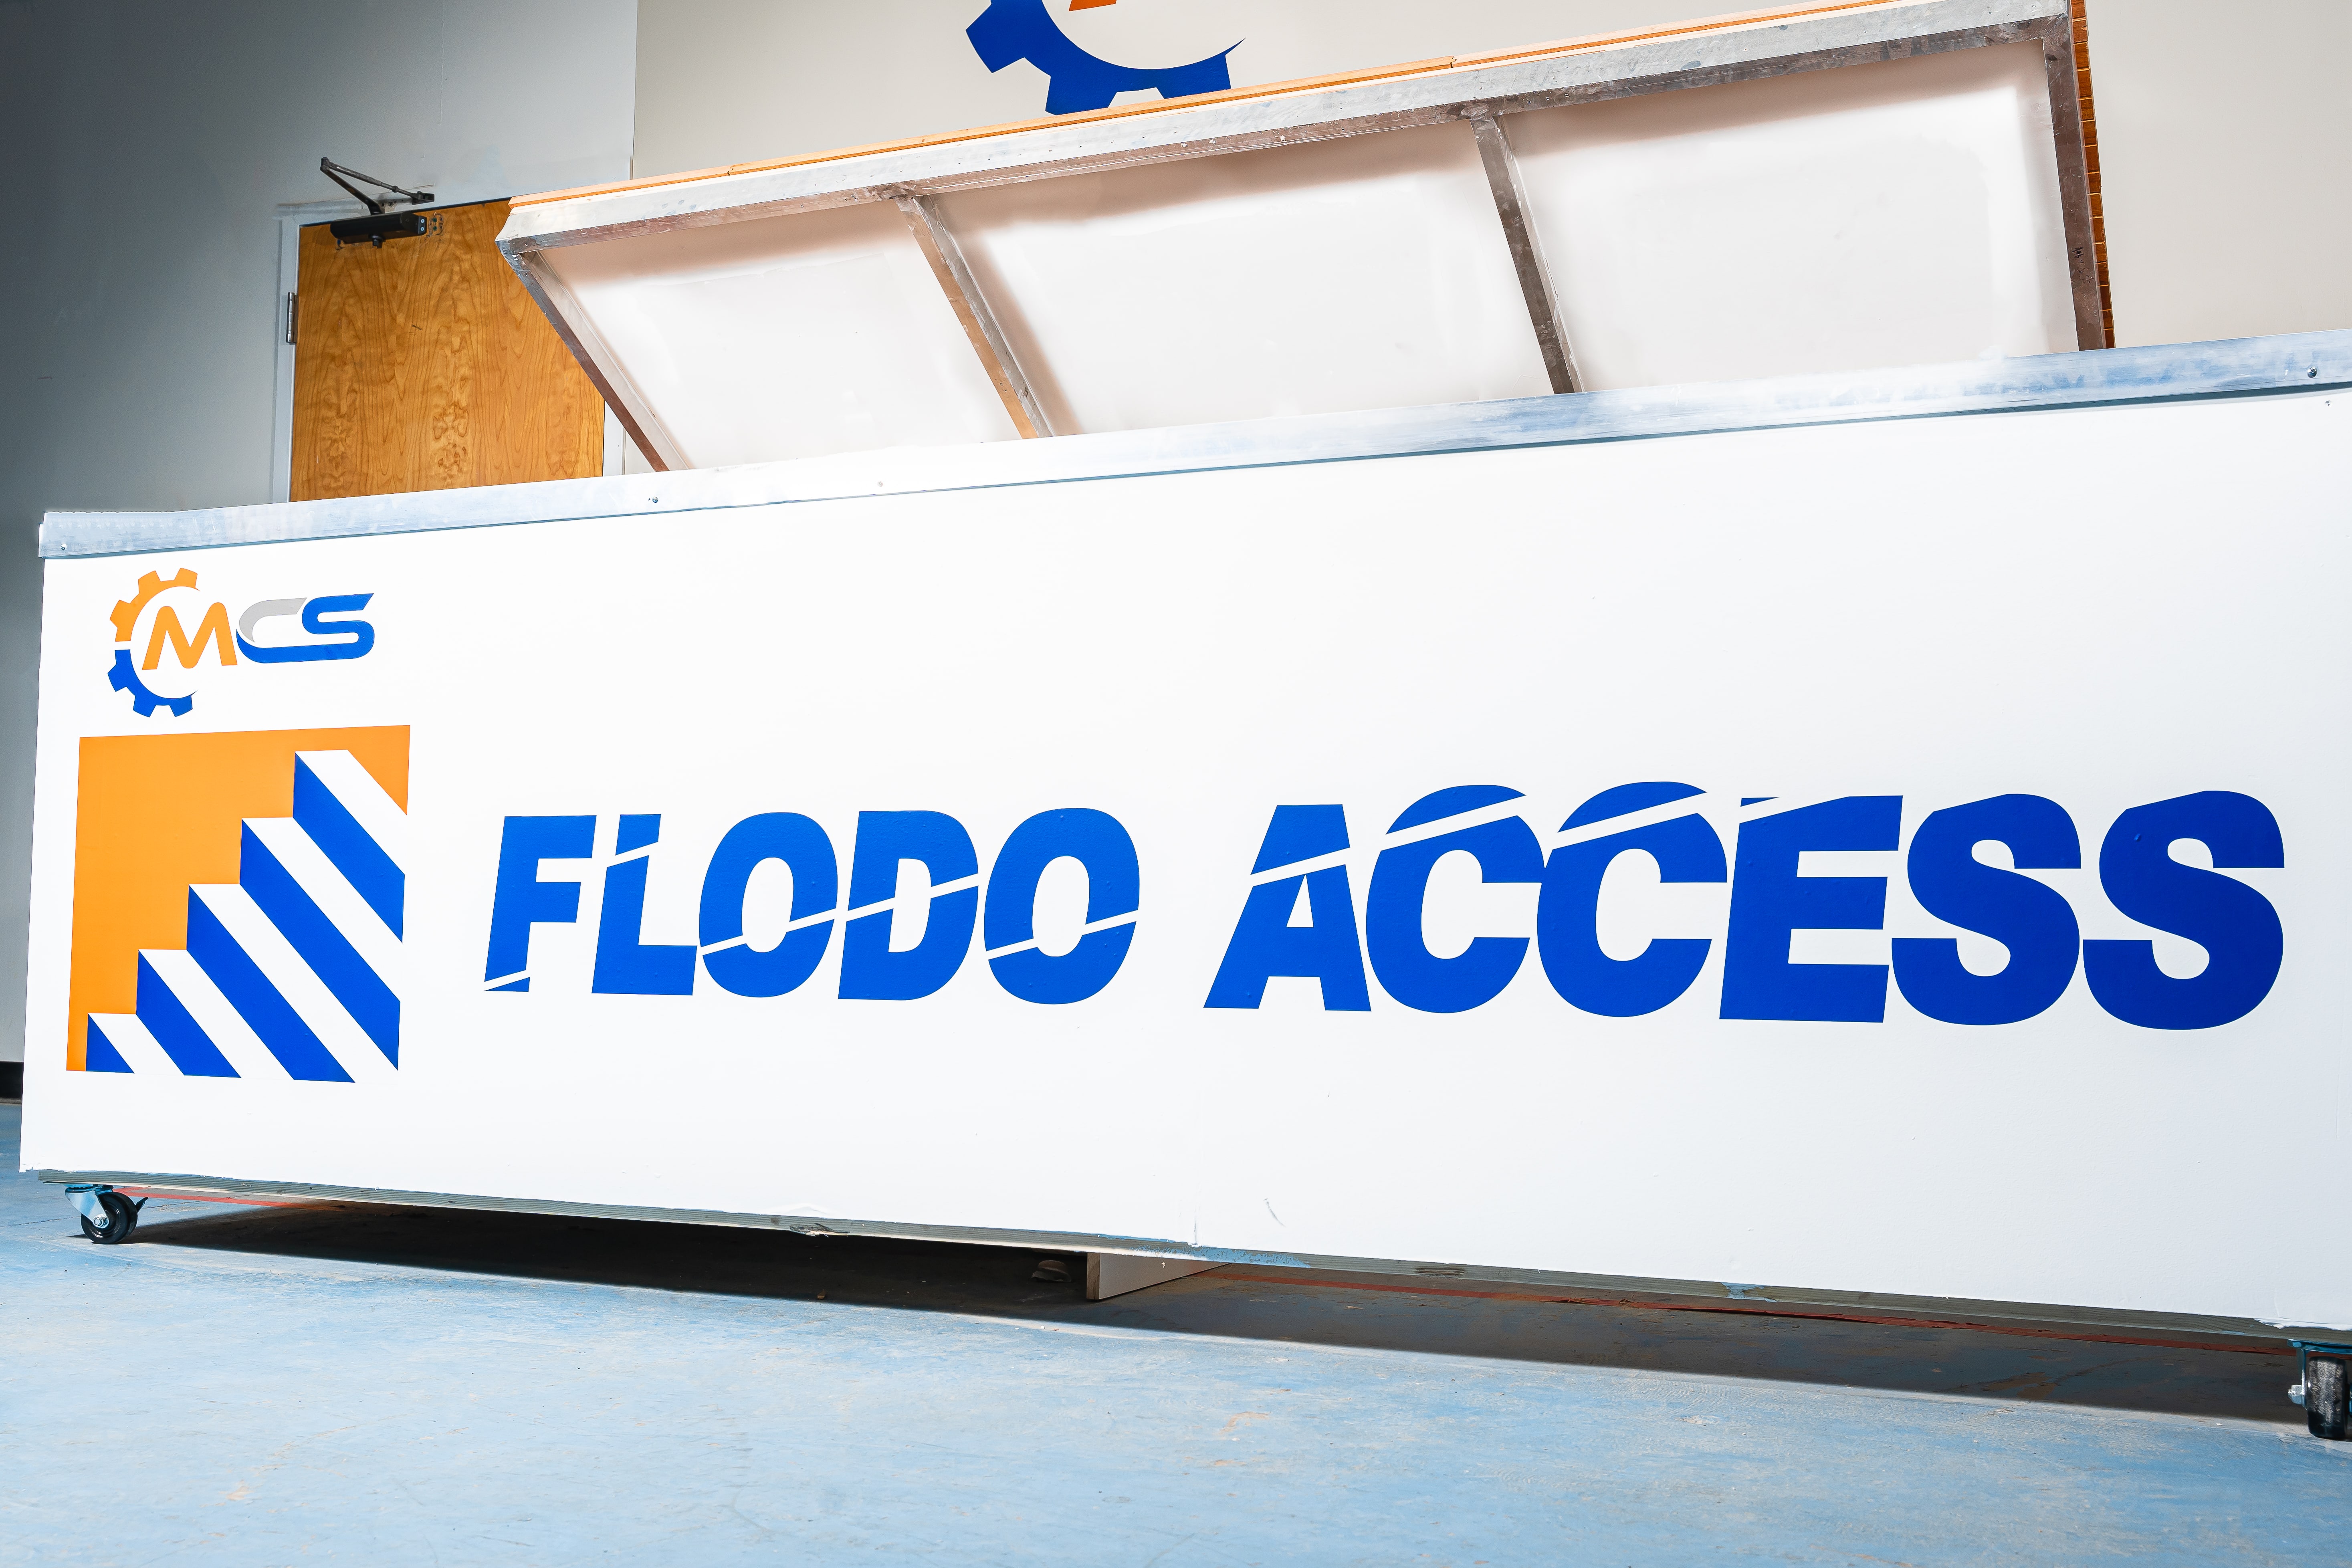 Flodo Access